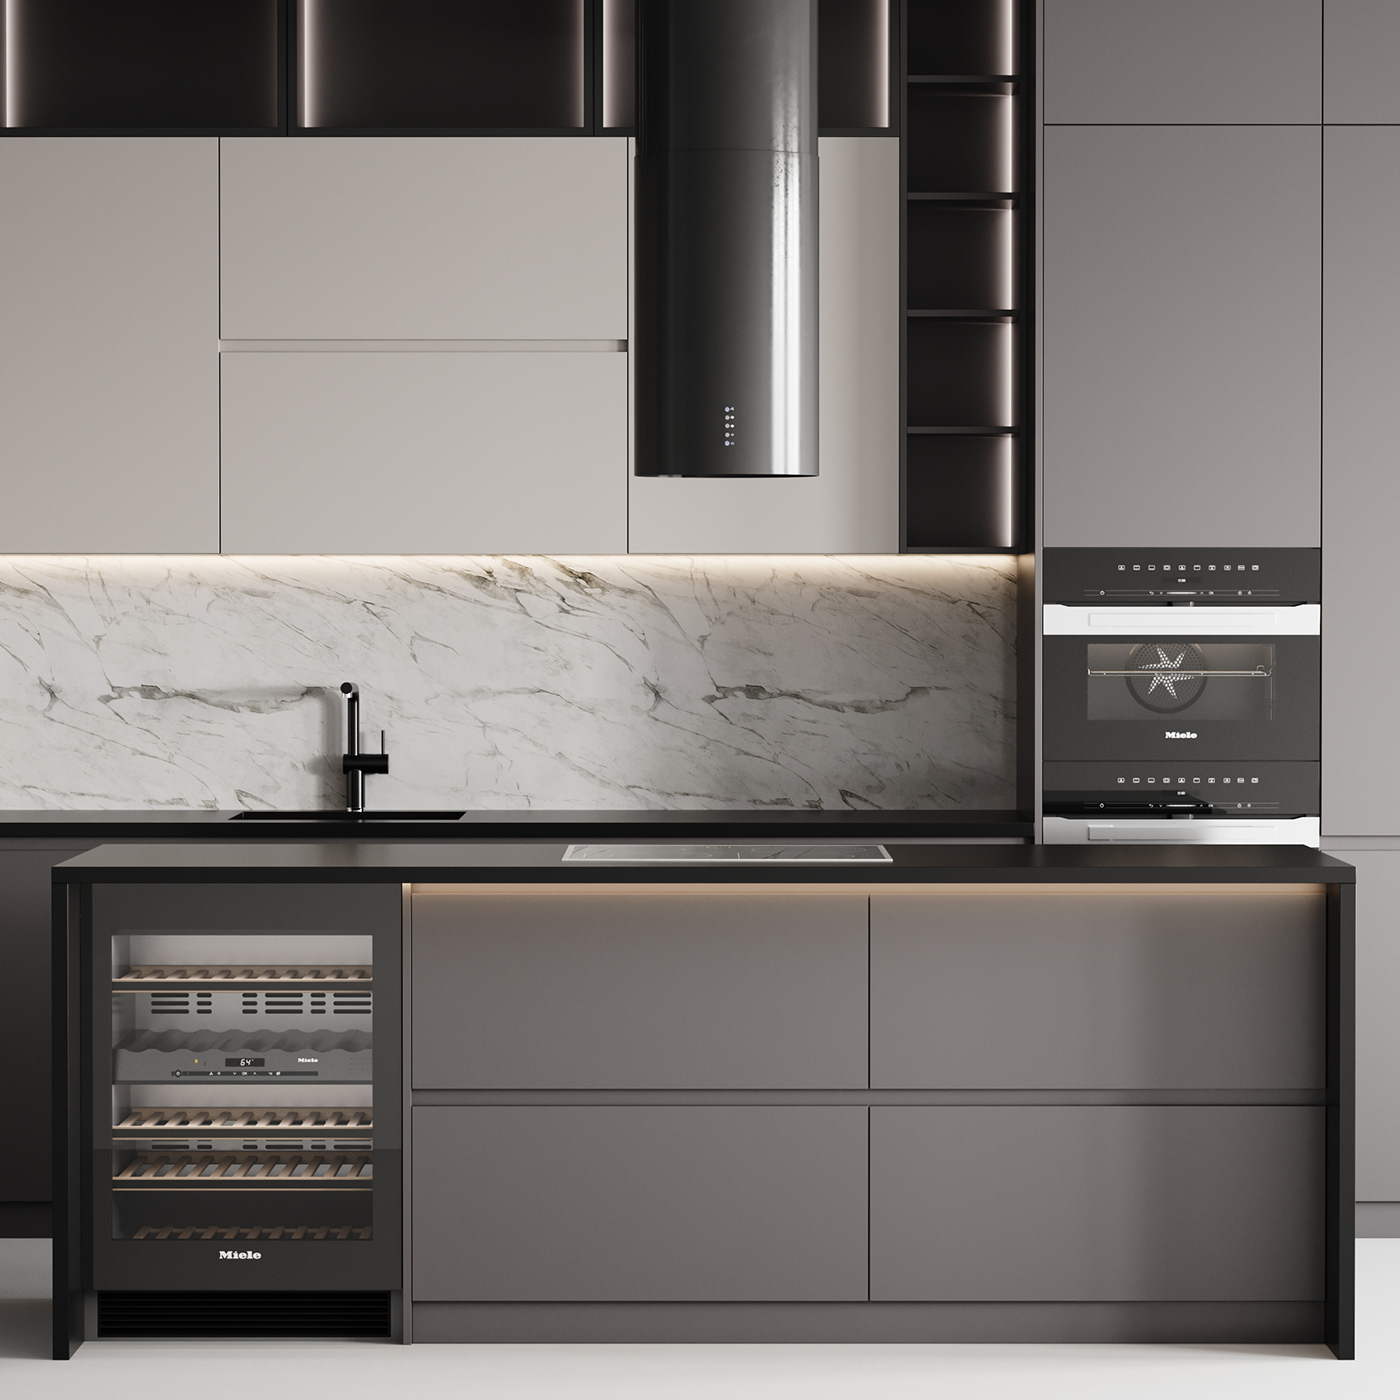 3d modeling 3dmodel archviz corona Interior interior design  kitchen kitchen design modern kitchen Render